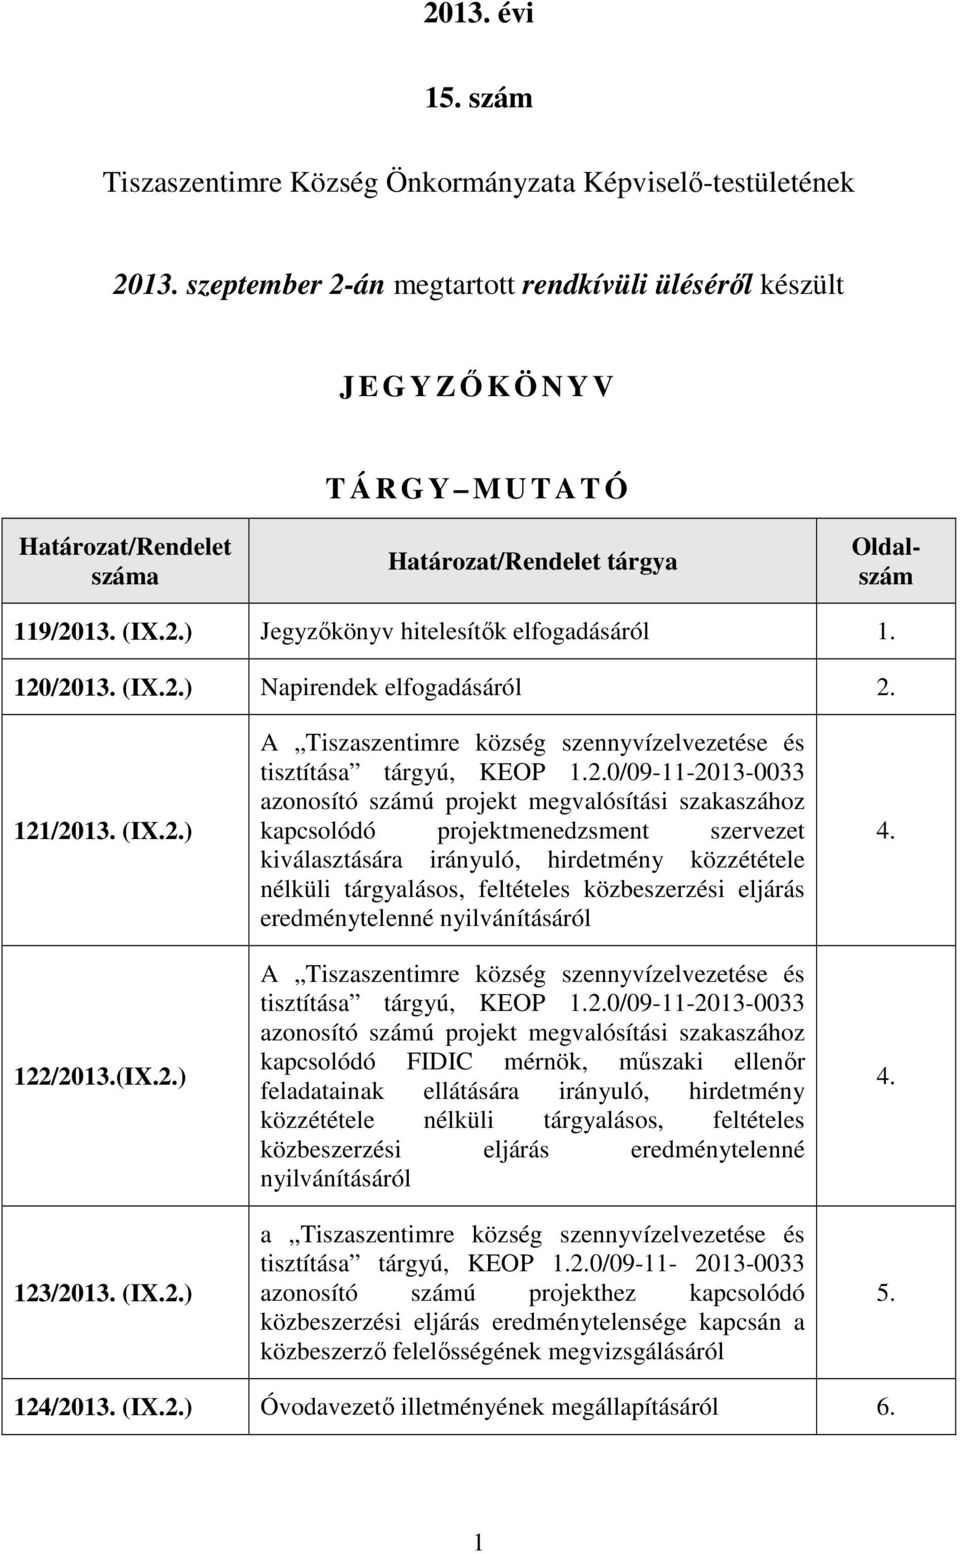 120/2013. (IX.2.) Napirendek elfogadásáról 2. 121/2013. (IX.2.) 122/2013.(IX.2.) 123/2013. (IX.2.) A Tiszaszentimre község szennyvízelvezetése és tisztítása tárgyú, KEOP 1.2.0/09-11-2013-0033